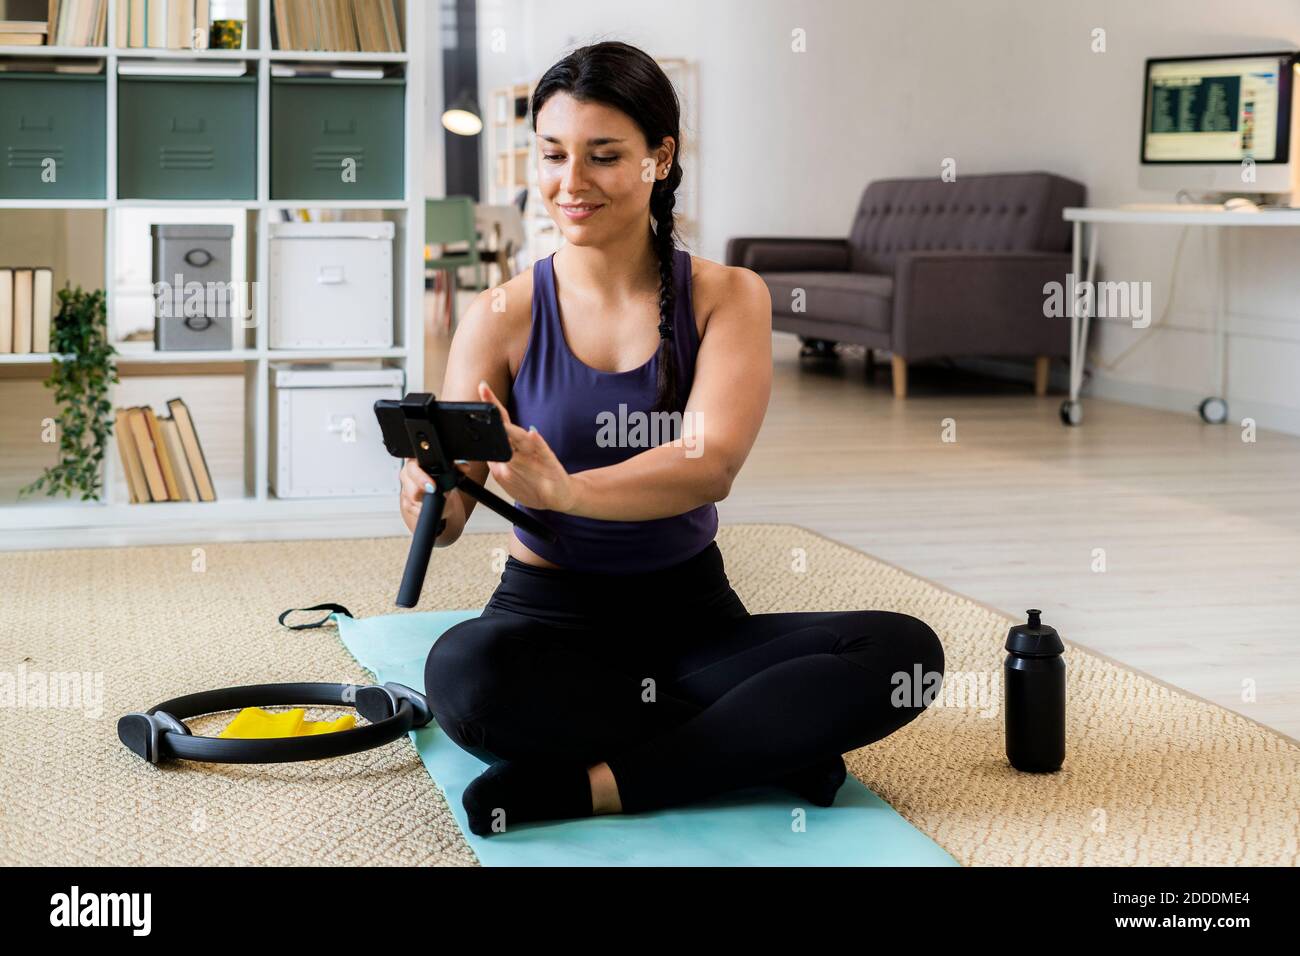 Athlète féminine avec pattes croisées assis sur un tapis d'exercice enregistrement vidéo à la maison Banque D'Images